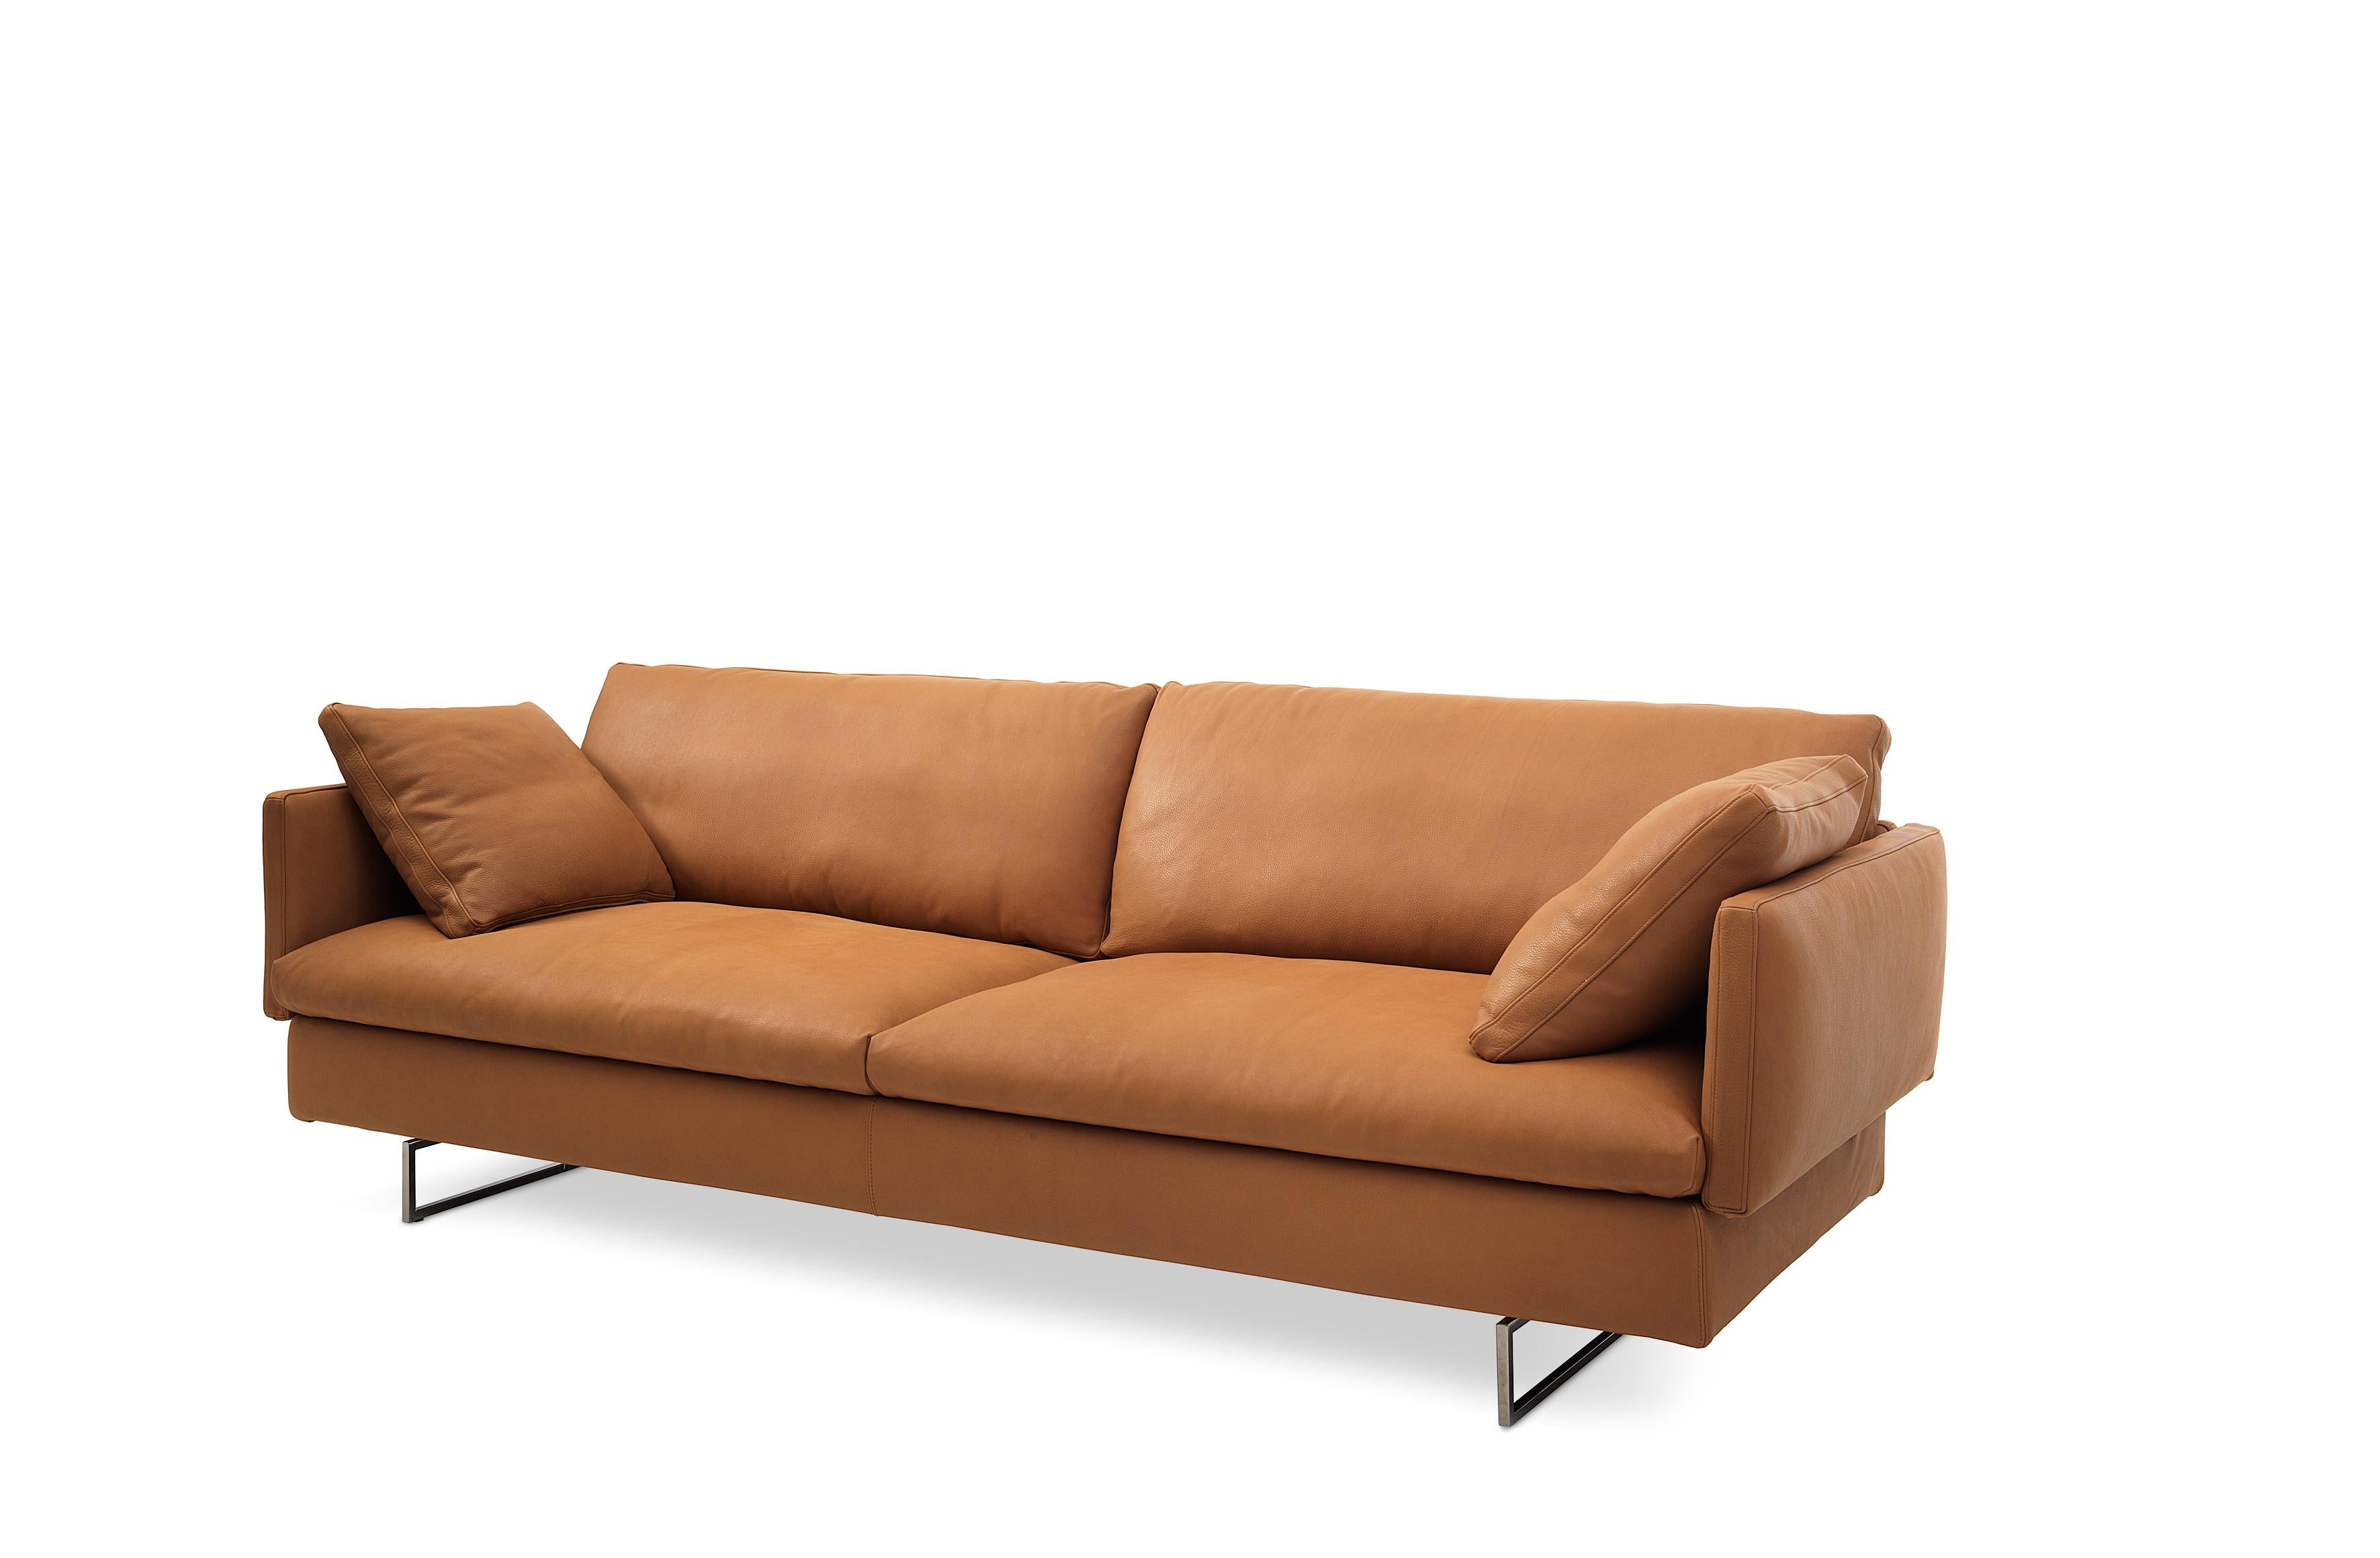 Dieses Sofa zeichnet sich durch klare Linien und ein einzigartiges, flexibles Design aus, das ein Gefühl von Schwung für eine größere Reise vermittelt. Die Polstervarianten sind essenziell und zeitgemäß, eklektisch und charaktervoll. Voyage kann